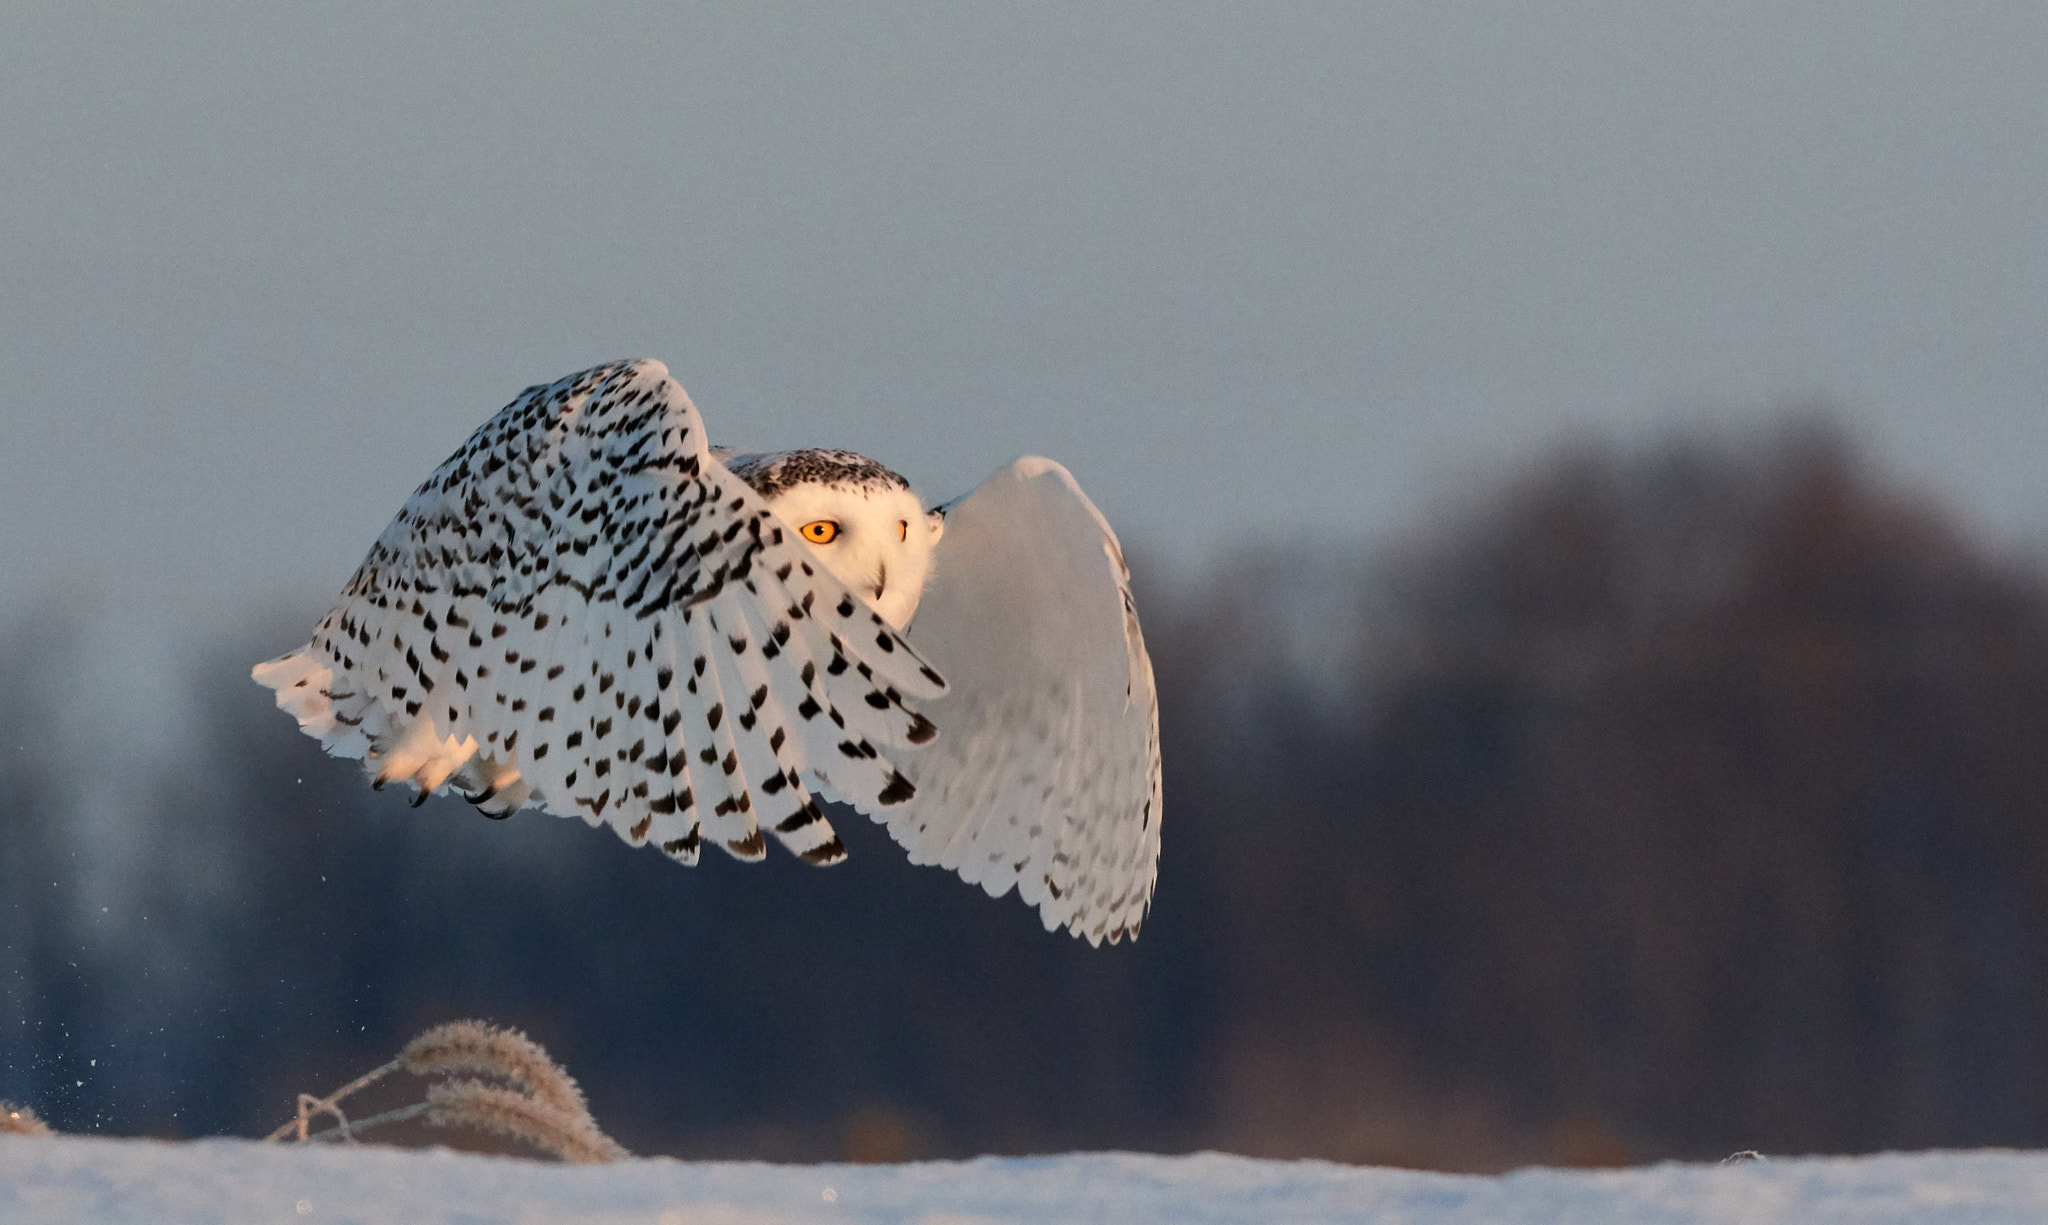 Nikon D500 sample photo. Snowy owl photography